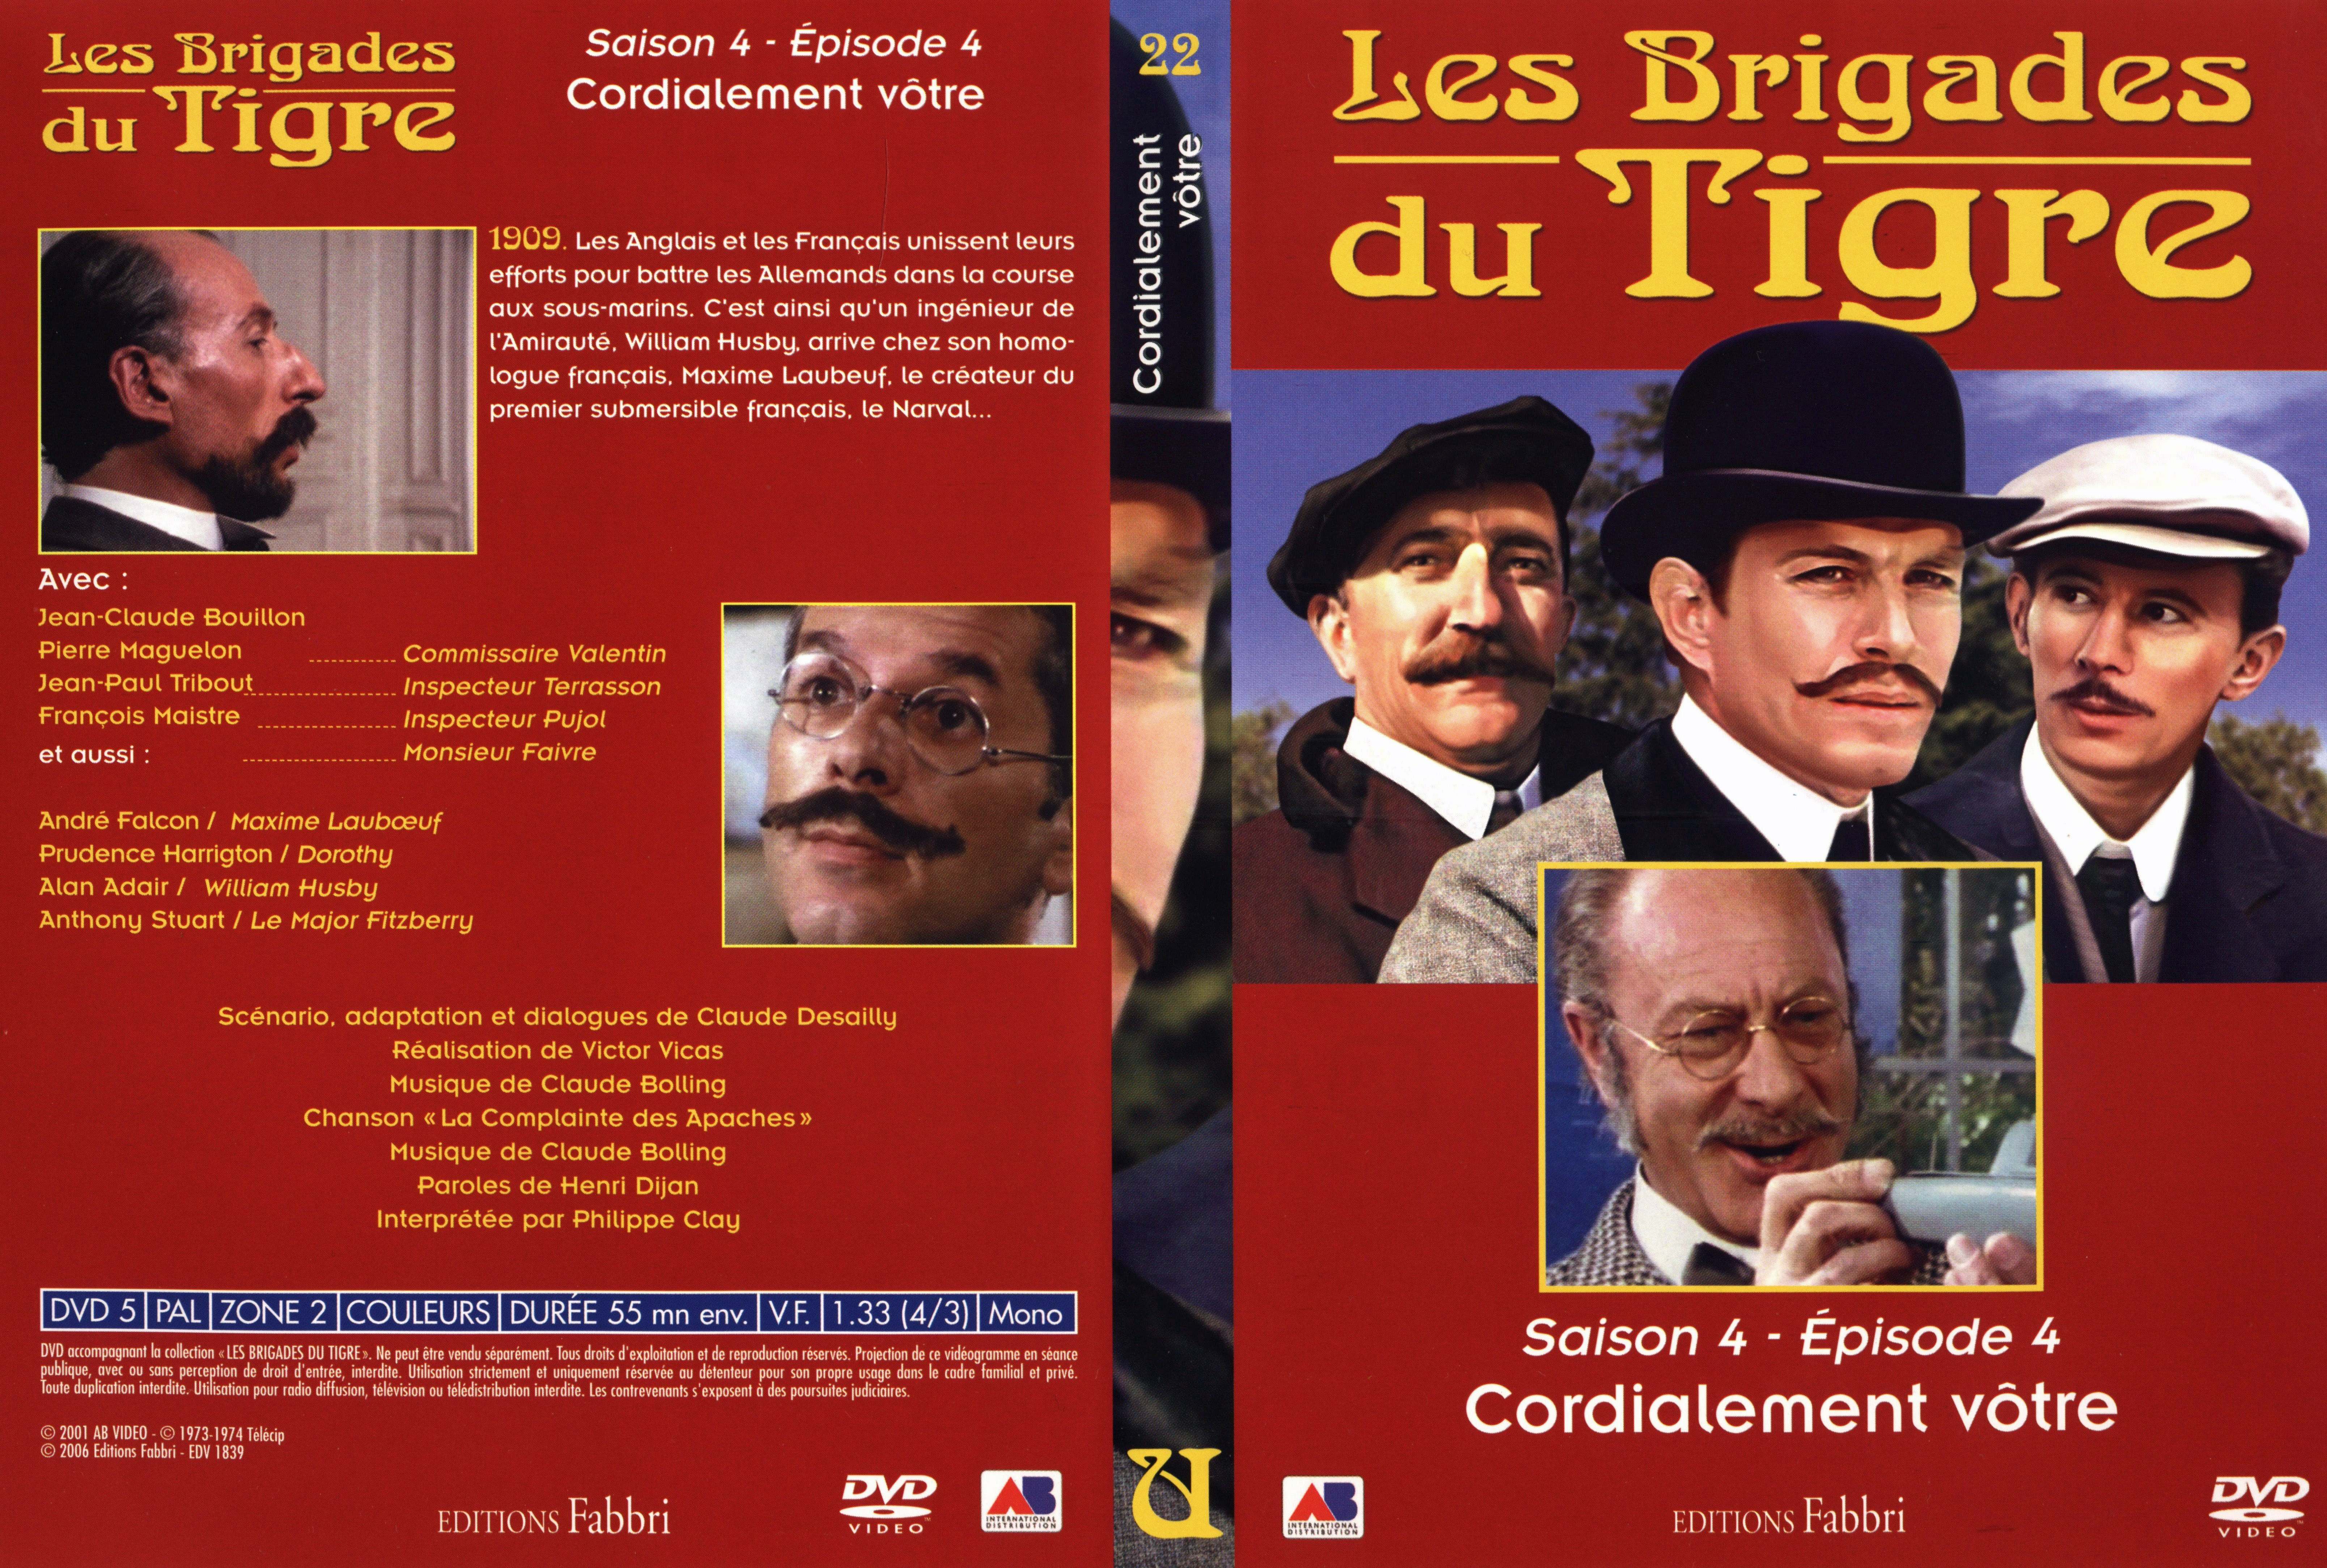 Jaquette DVD Les brigades du tigre saison 4 pisode 4